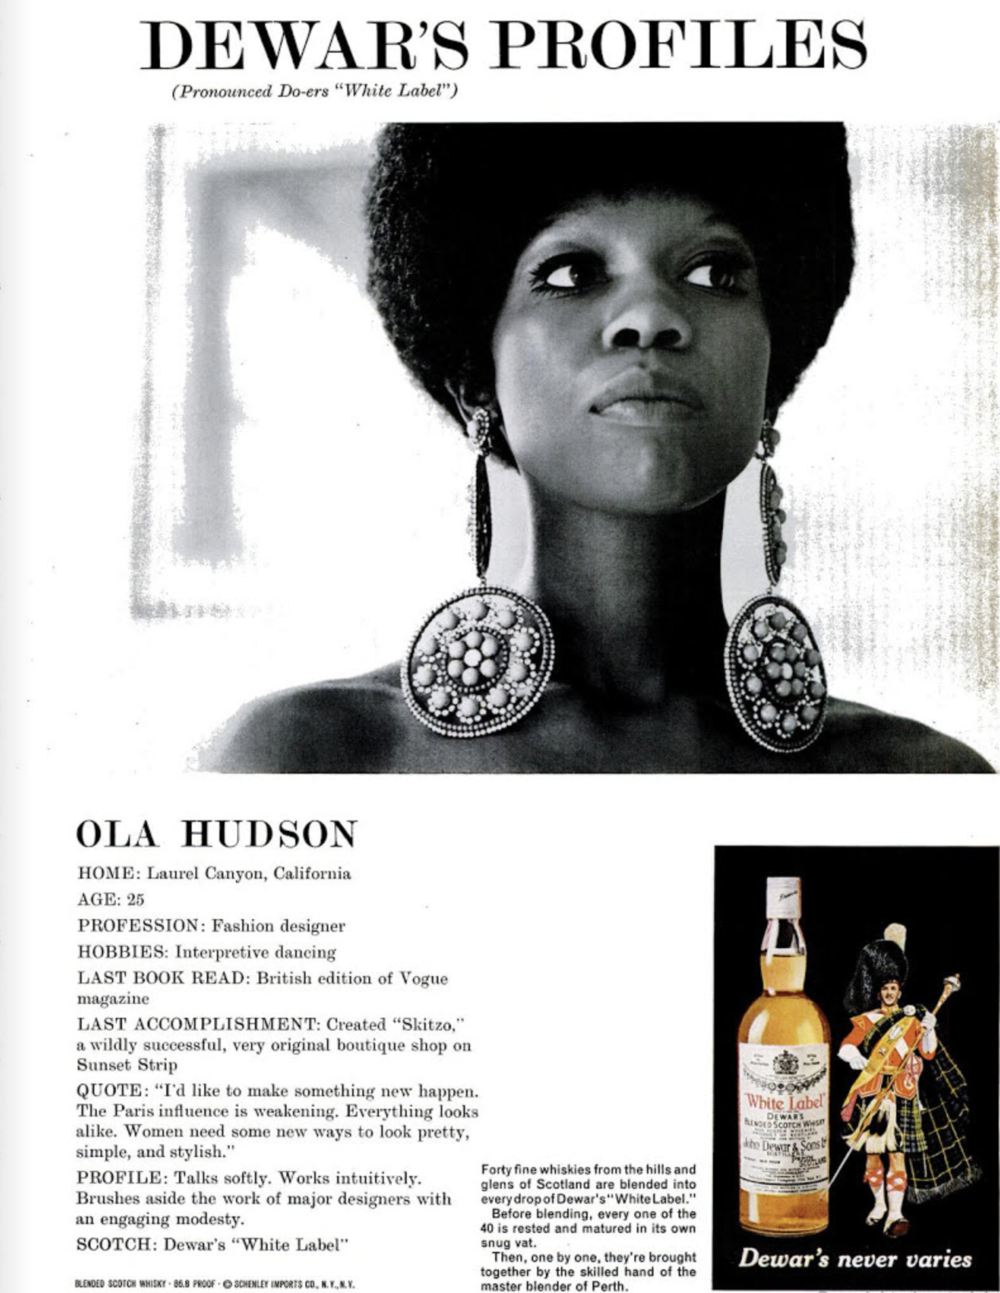 Advert for Dewar’s whisky, 1971.